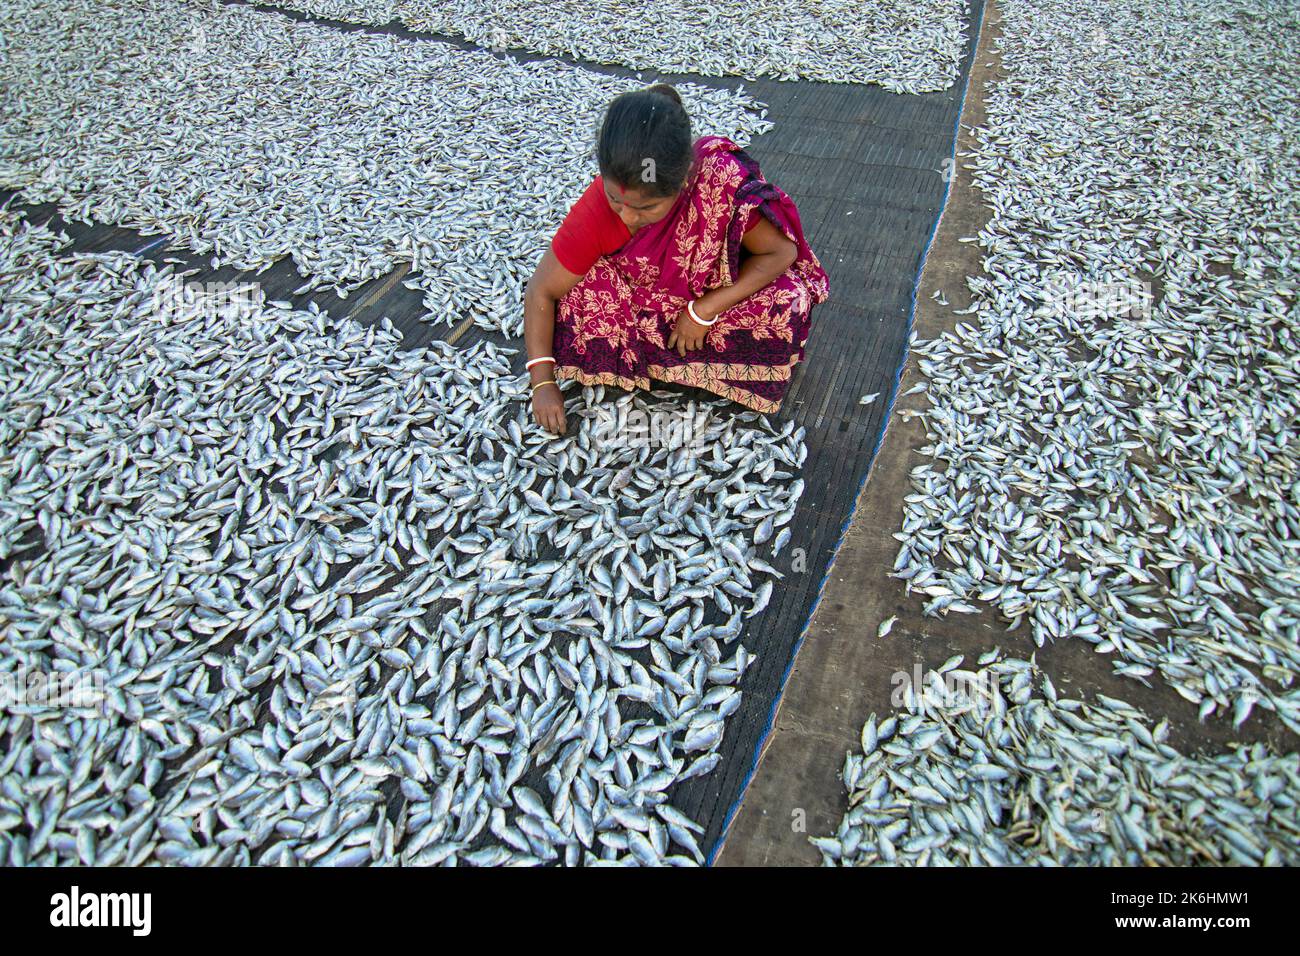 Frauen verarbeiten kleine Fische für den Trockenfischhandel. Arbeiter schneiden und reinigen die Fische, fügen Salz hinzu und trocknen sie dann auf einer Bambusplattform. Stockfoto